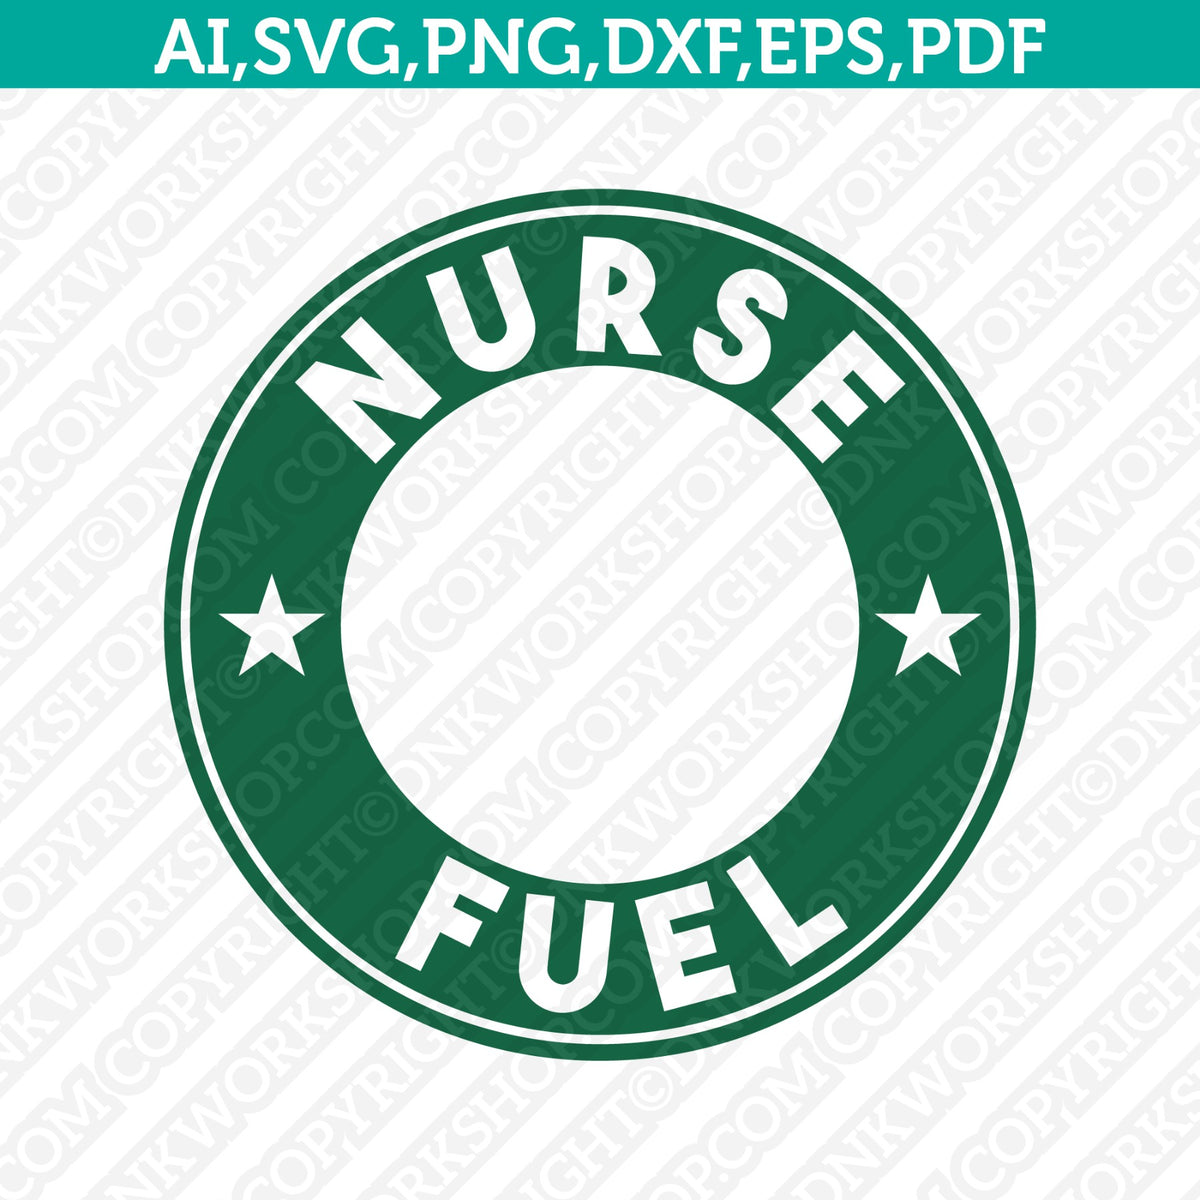 Customized Nurse Starbucks Reusable Venti Cup - DecalCustom